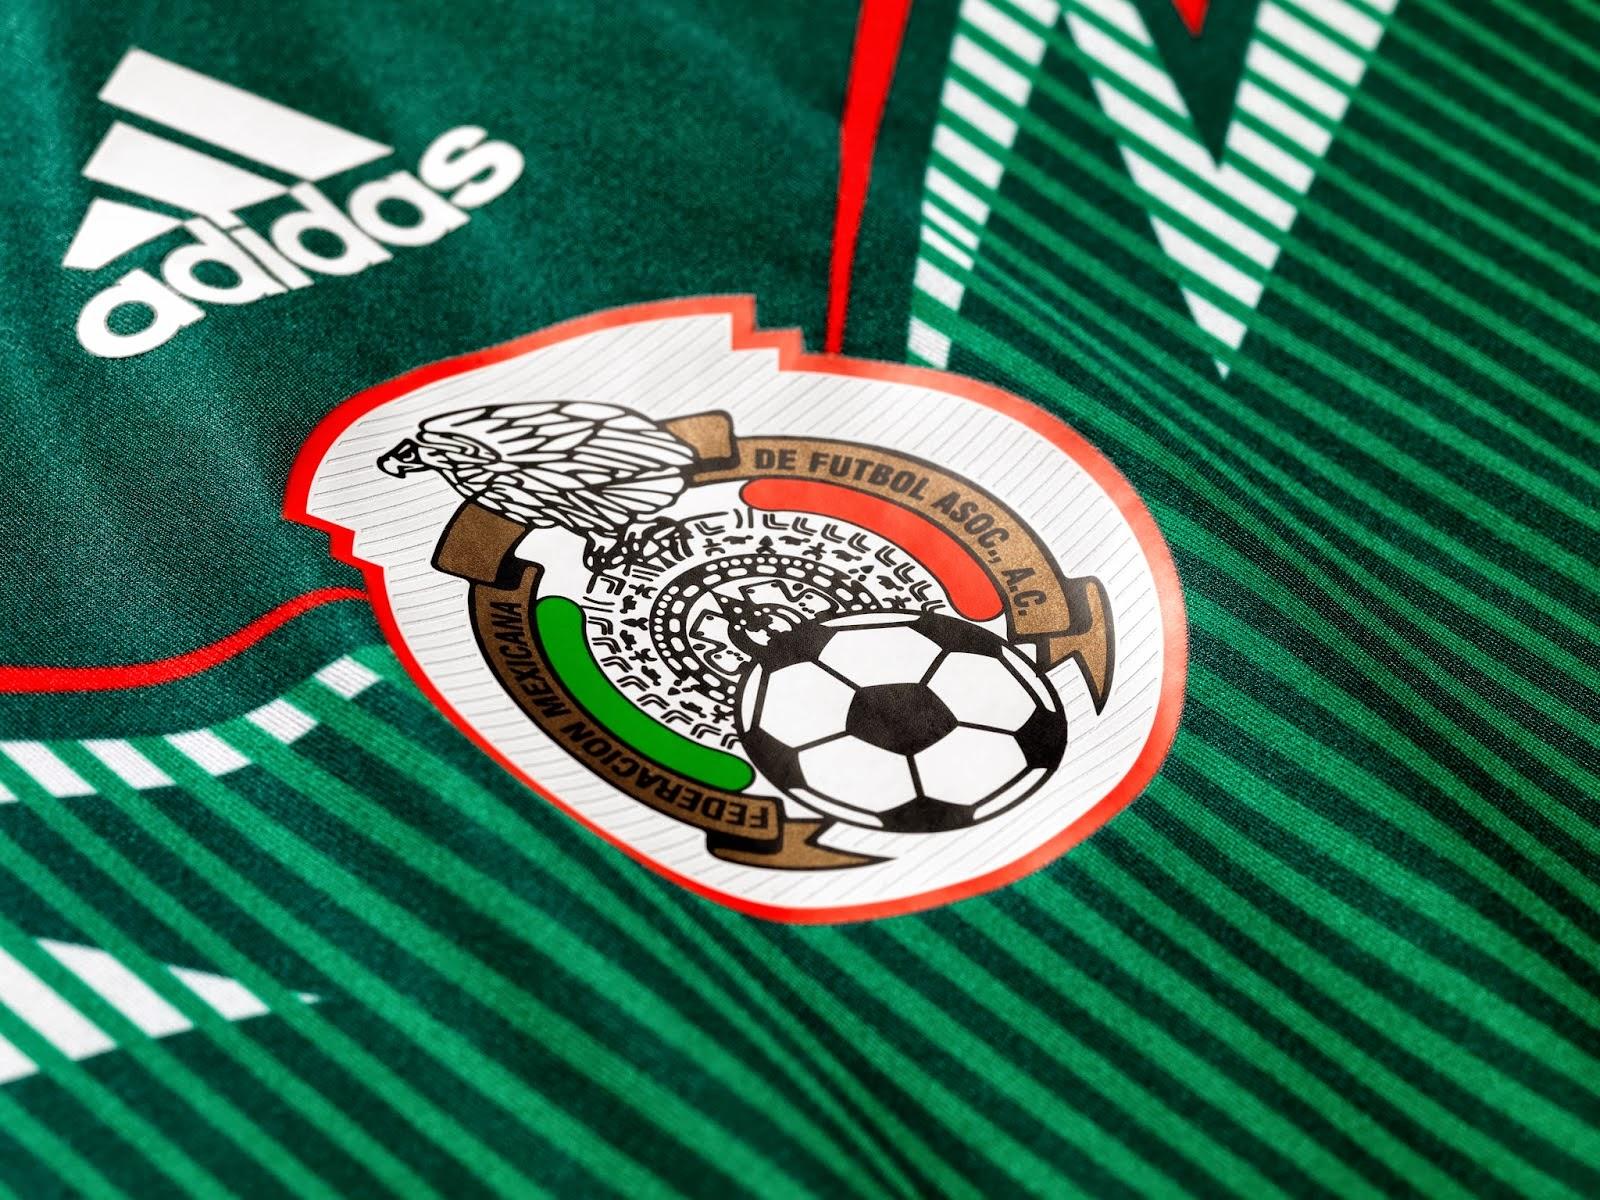 Mexico Soccer Logo Wallpaper